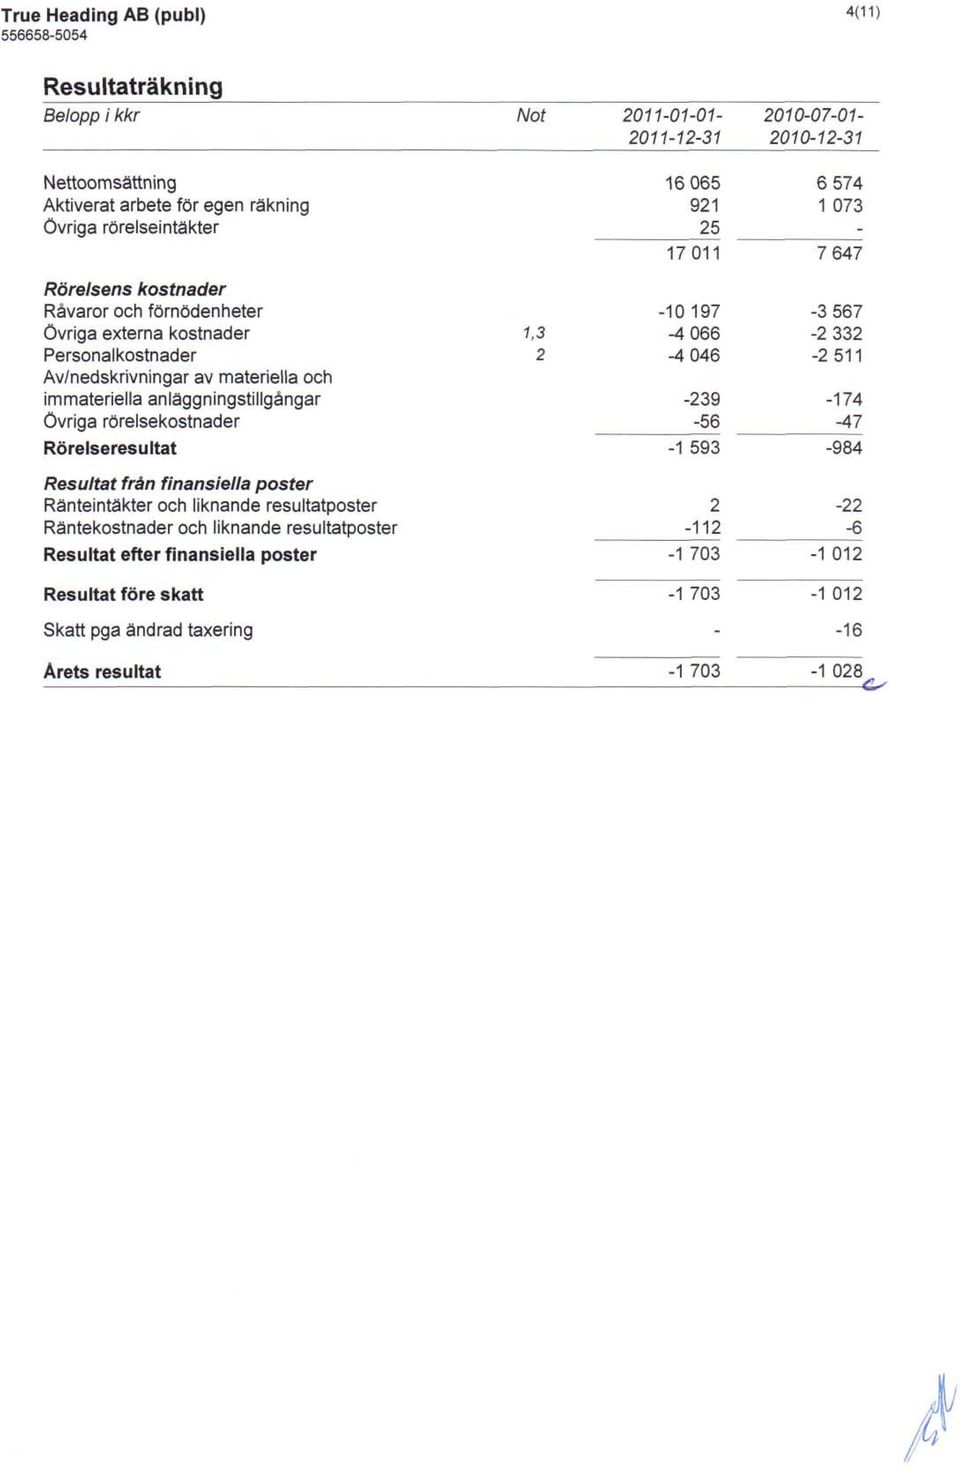 Resultat fran finansiella poster Ranteinta'kter och liknande resultatposter Rantekostnader och liknande resultatposter Resultat efter finansiella poster Resultat fore skatt